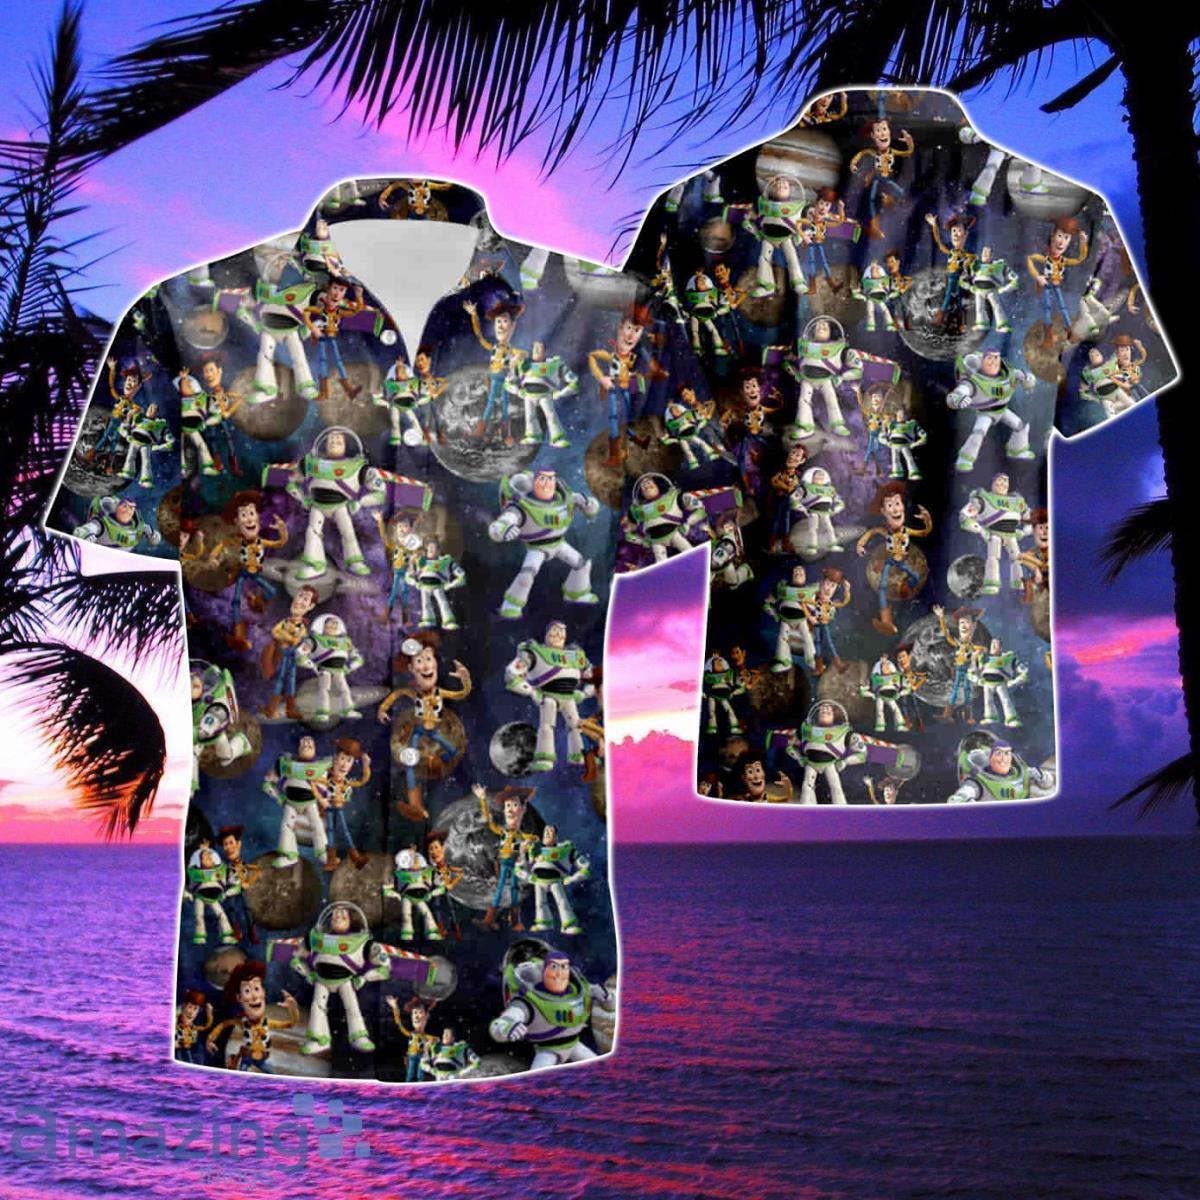 Vintage Hawaiian Shirts